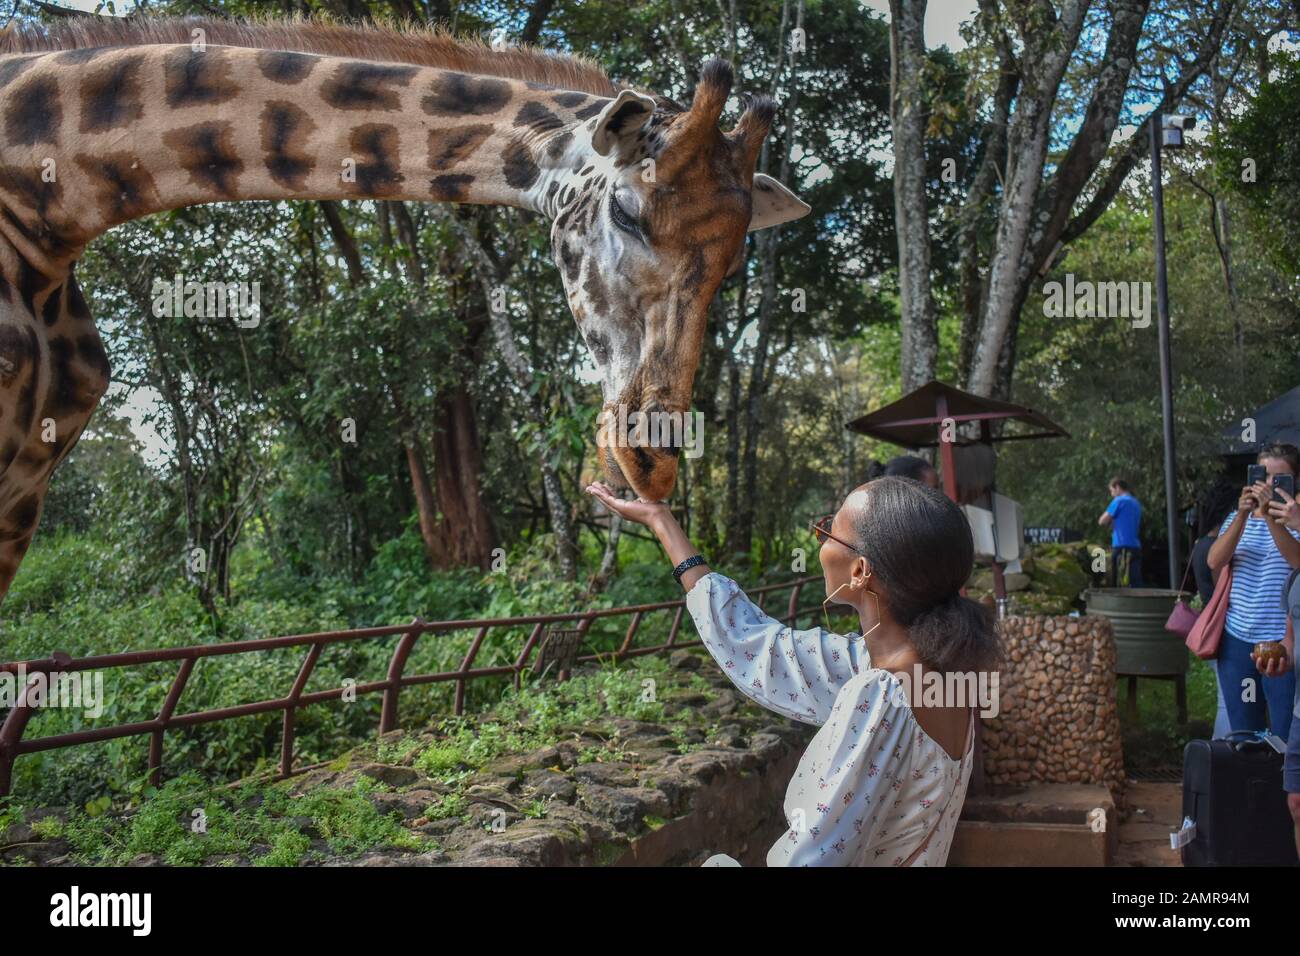 Nairobi /Kenya- 12 dicembre 2019: una bellissima donna keniota alimentando una giraffa Rothschild dal palmo della sua mano a giraffa Centre di Nairobi. Foto Stock